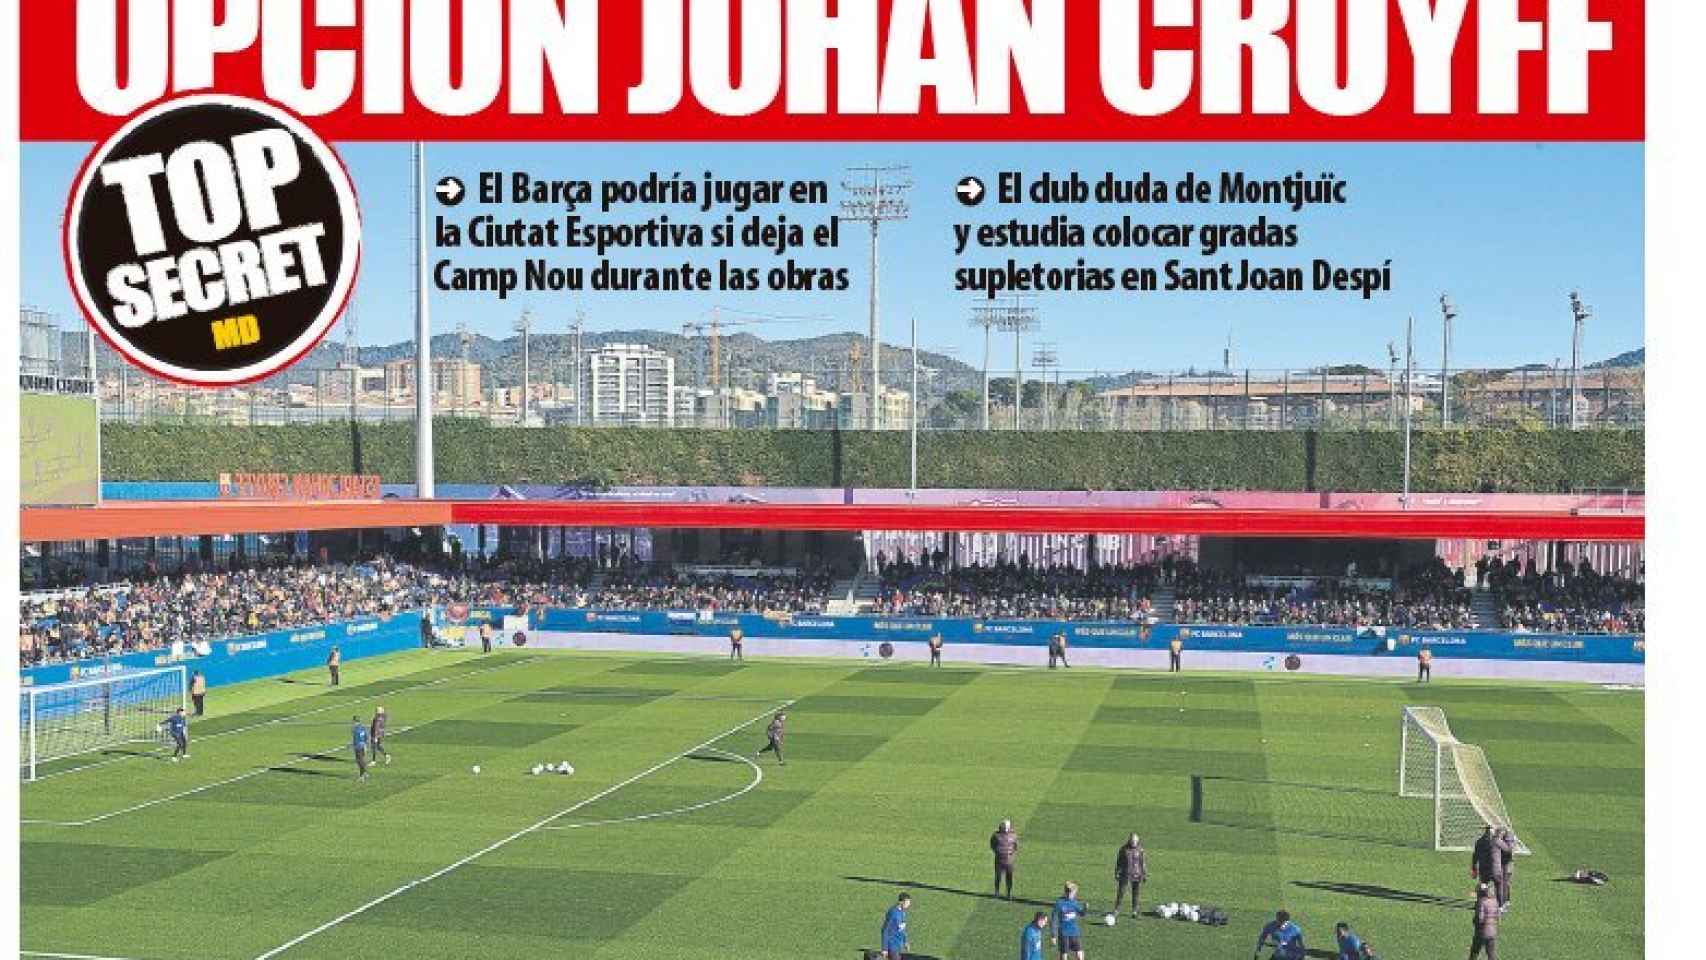 La portada del diario Mundo Deportivo (18/07/2021)